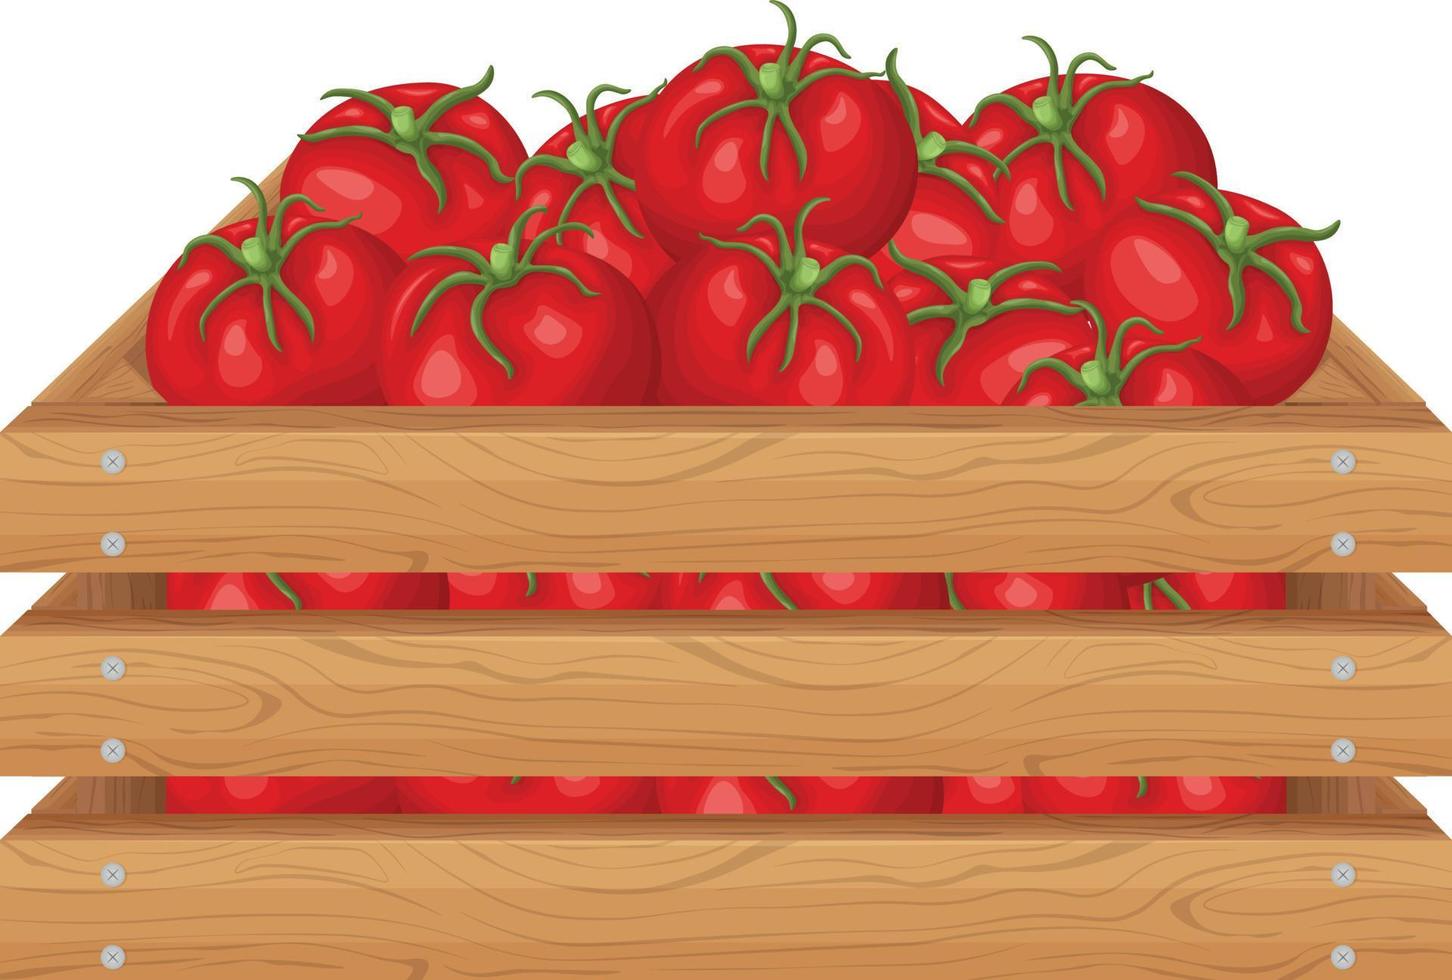 uma caixa de tomates. tomates vermelhos maduros em uma caixa de madeira. legumes em uma caixa de madeira. ilustração vetorial isolada em um fundo branco vetor